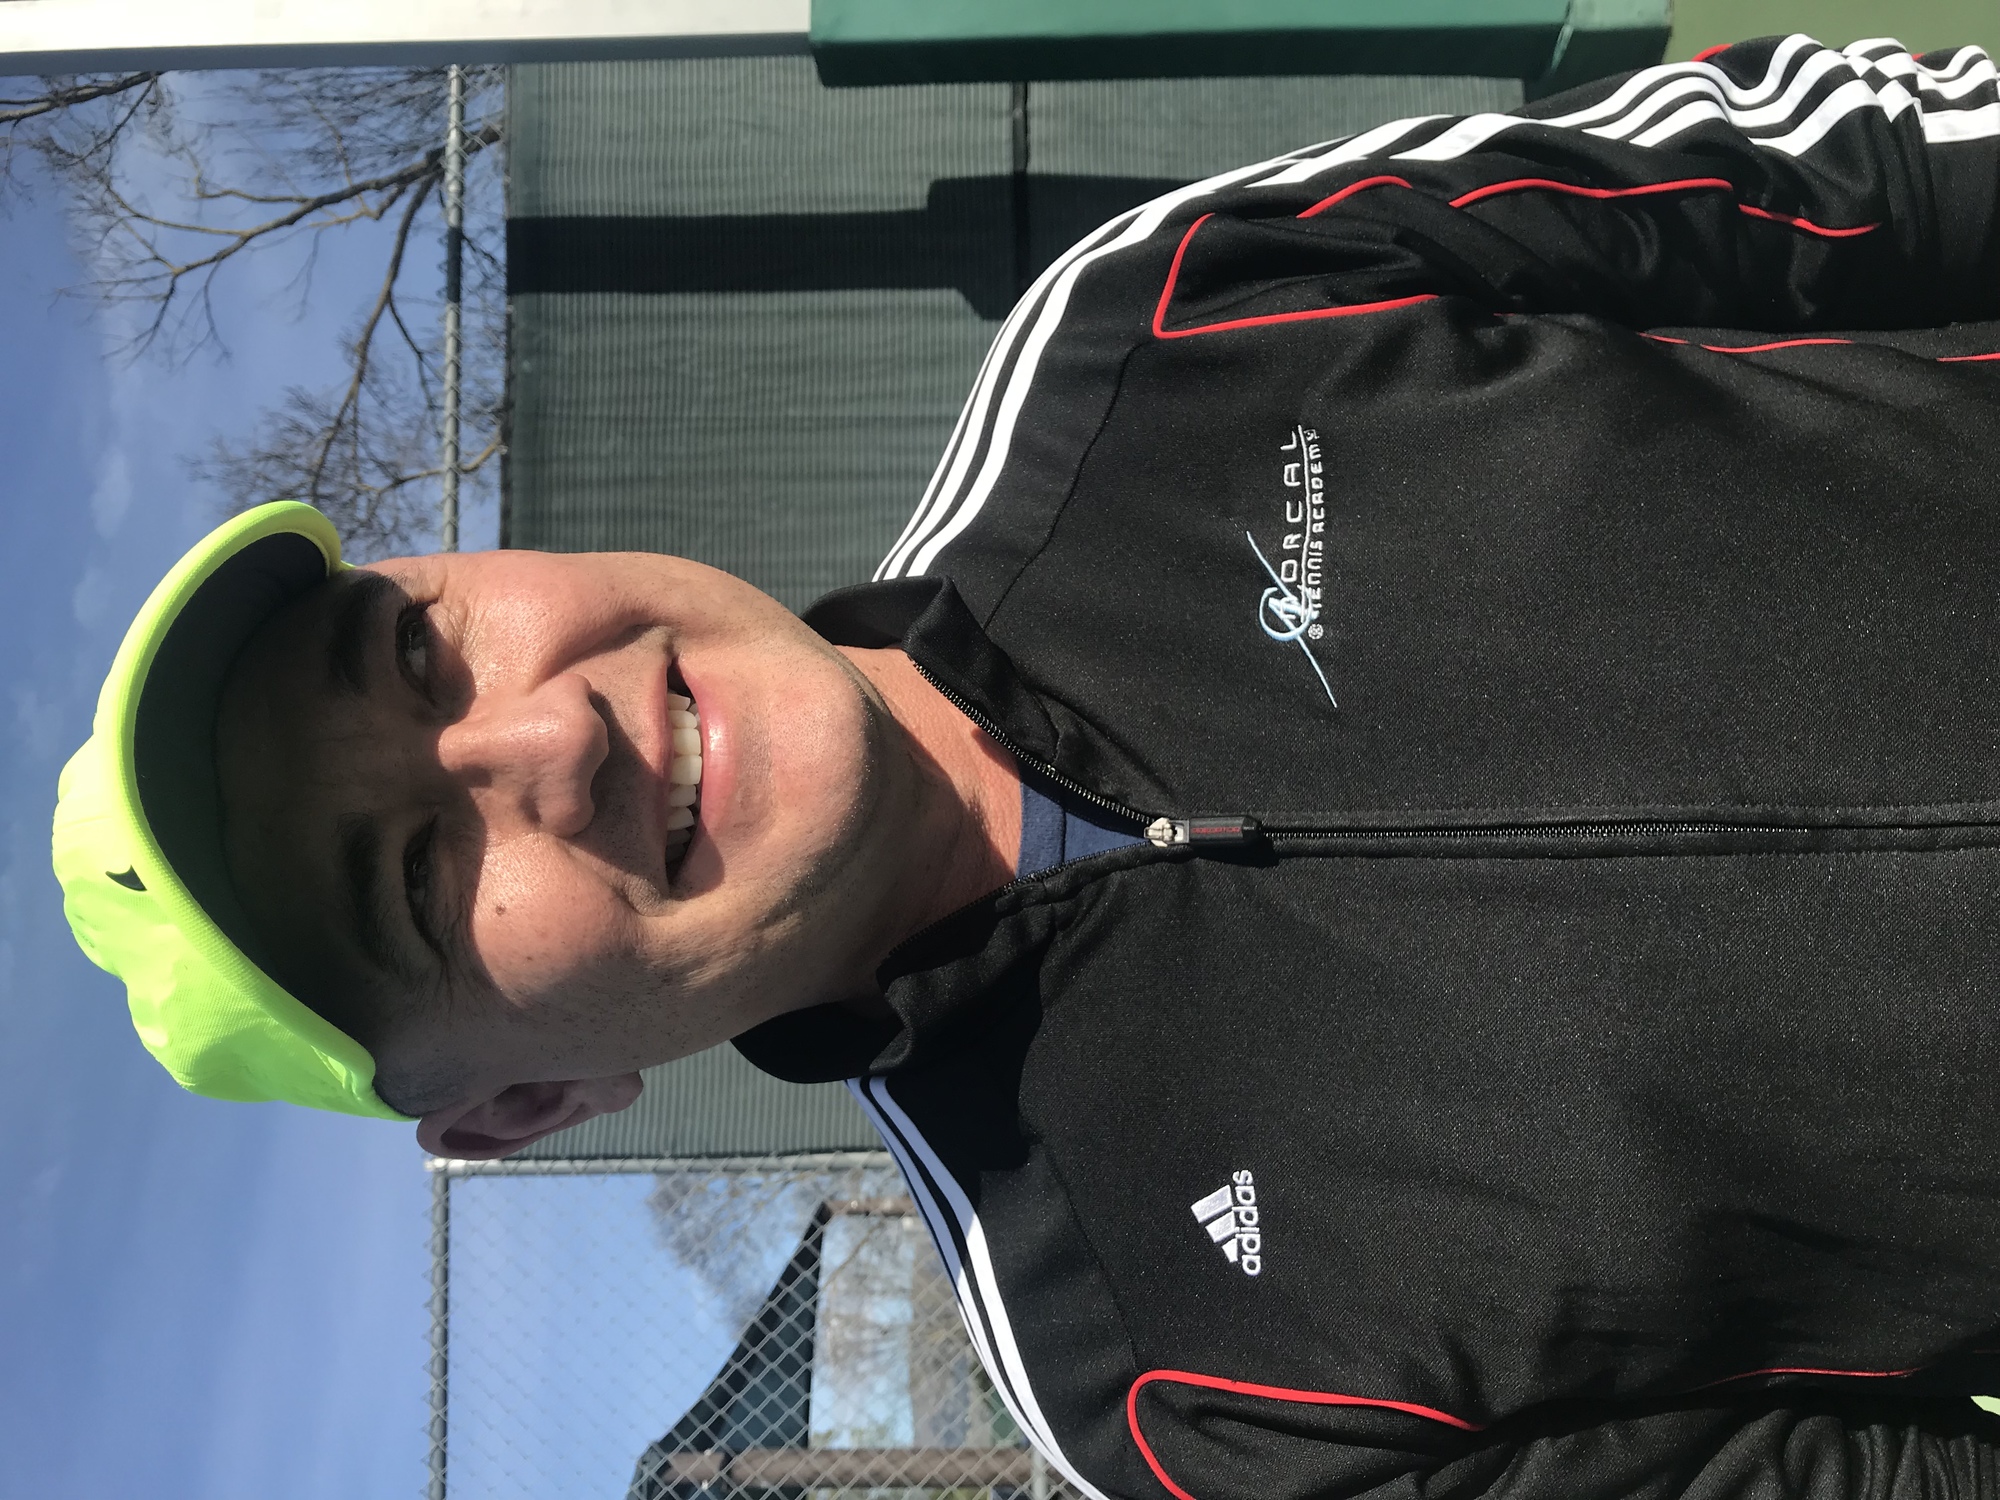 Glenn M. teaches tennis lessons in Morgan Hill , CA